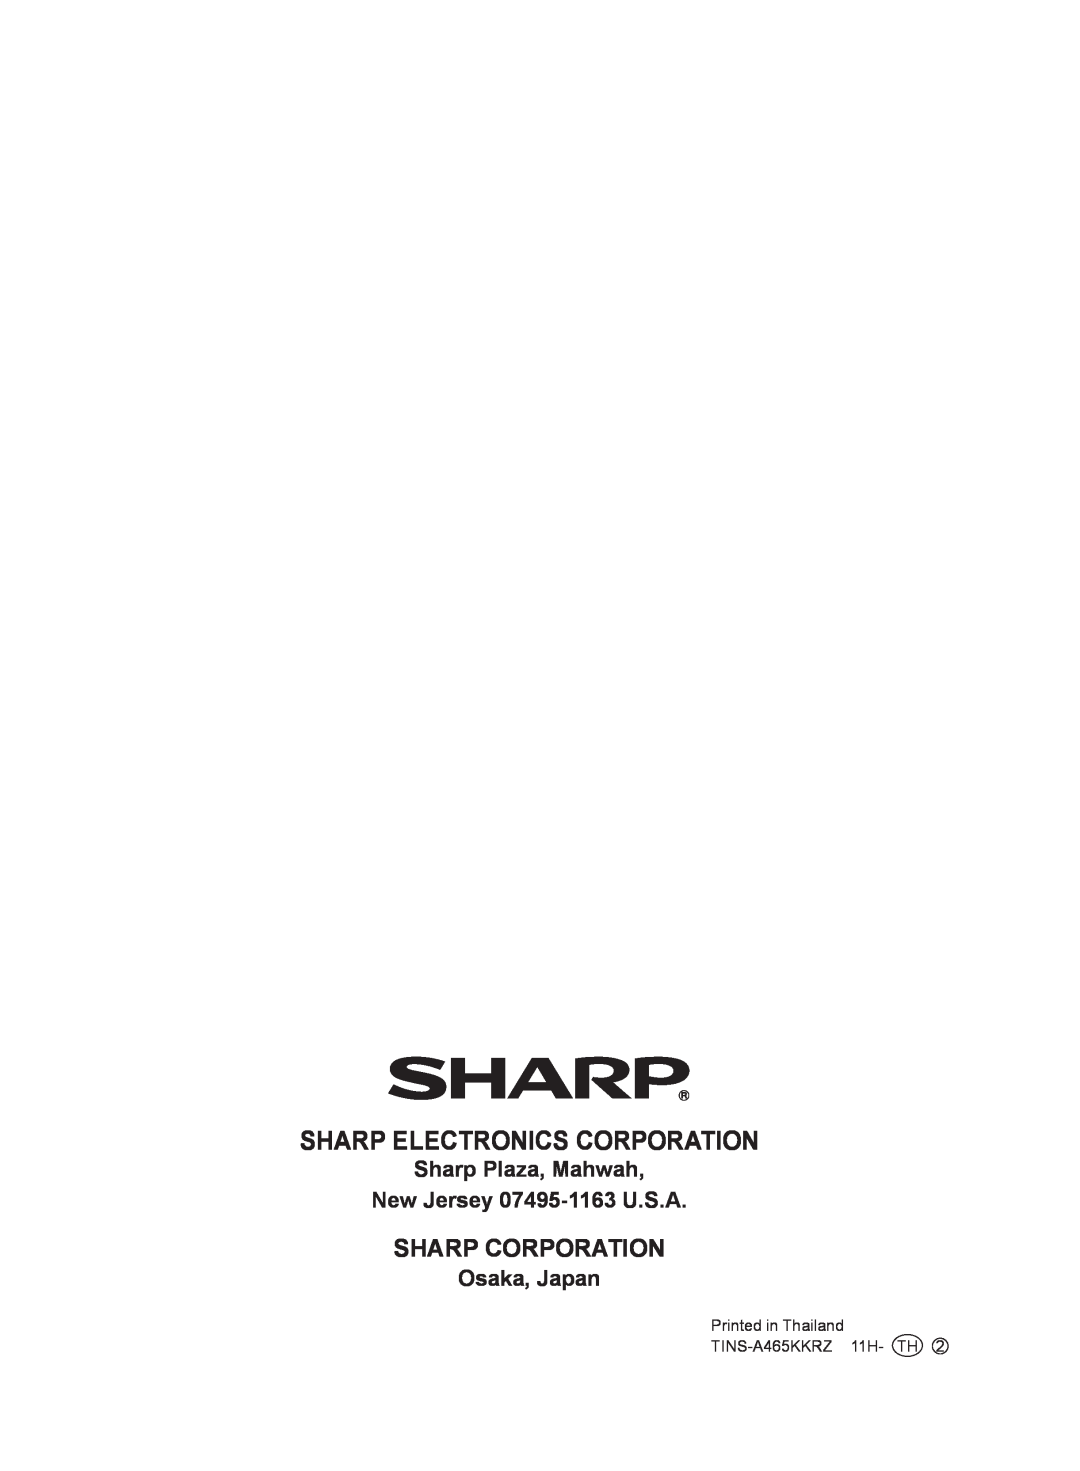 Sharp FP-A60U, FP-A80U Sharp Electronics Corporation, Sharp Plaza, Mahwah New Jersey 07495-1163U.S.A, Osaka, Japan 